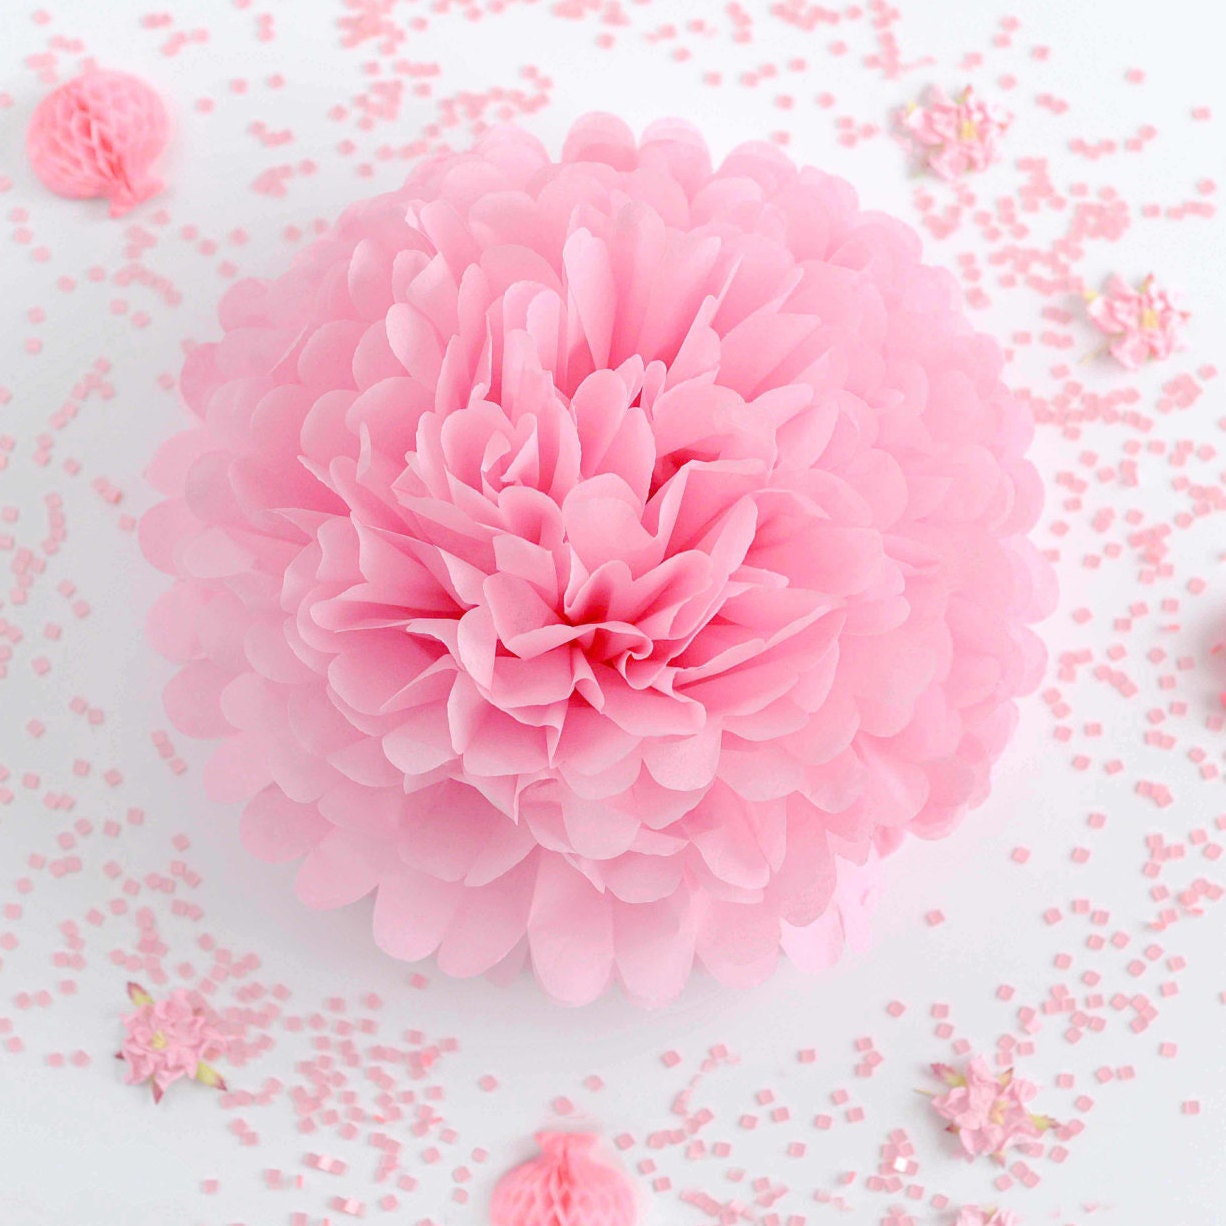 Créez des fleurs en papier et en tissu pour un enterrement